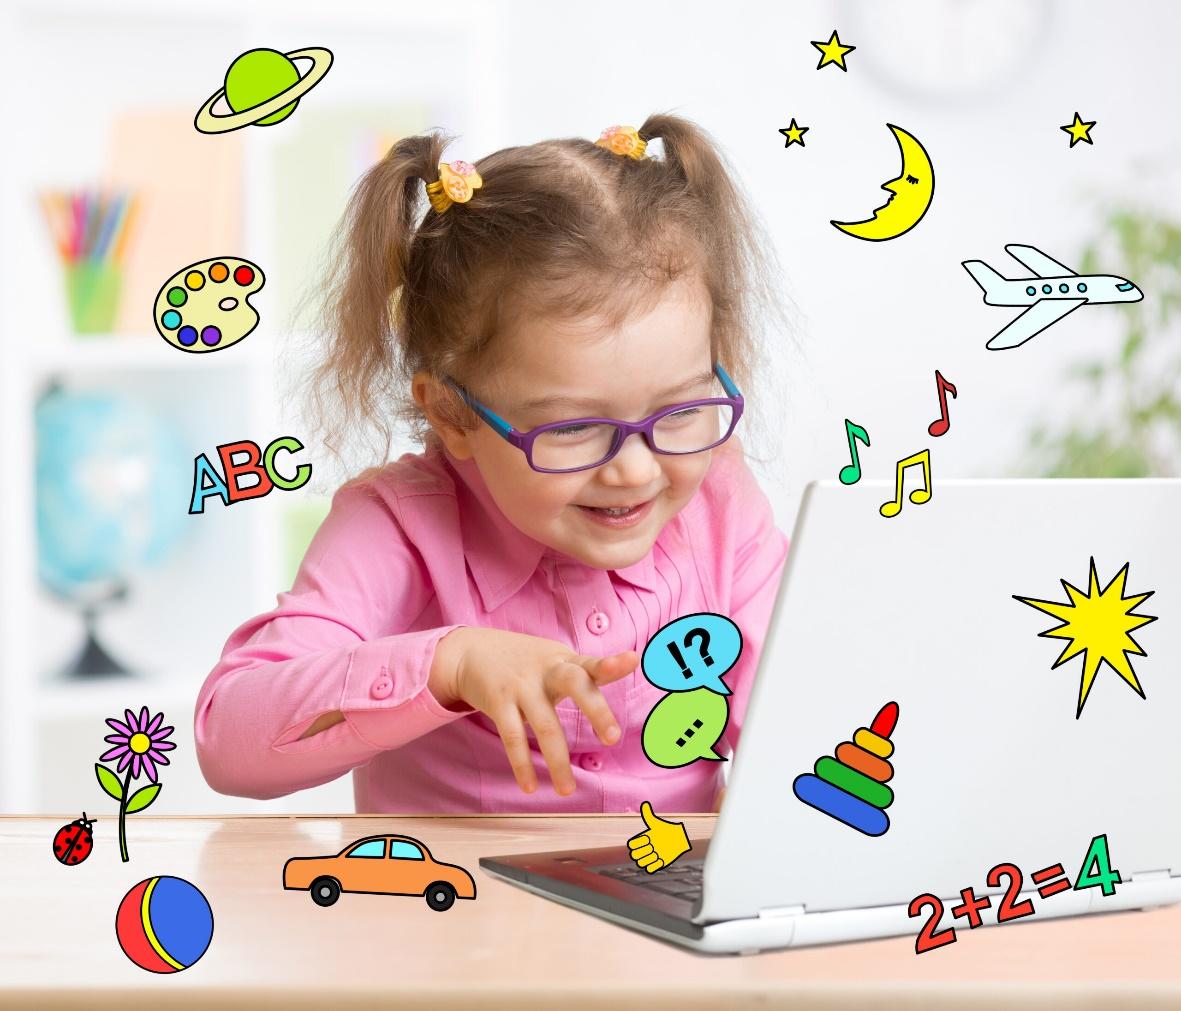 دوره های آموزش آنلاین زبان کودکان